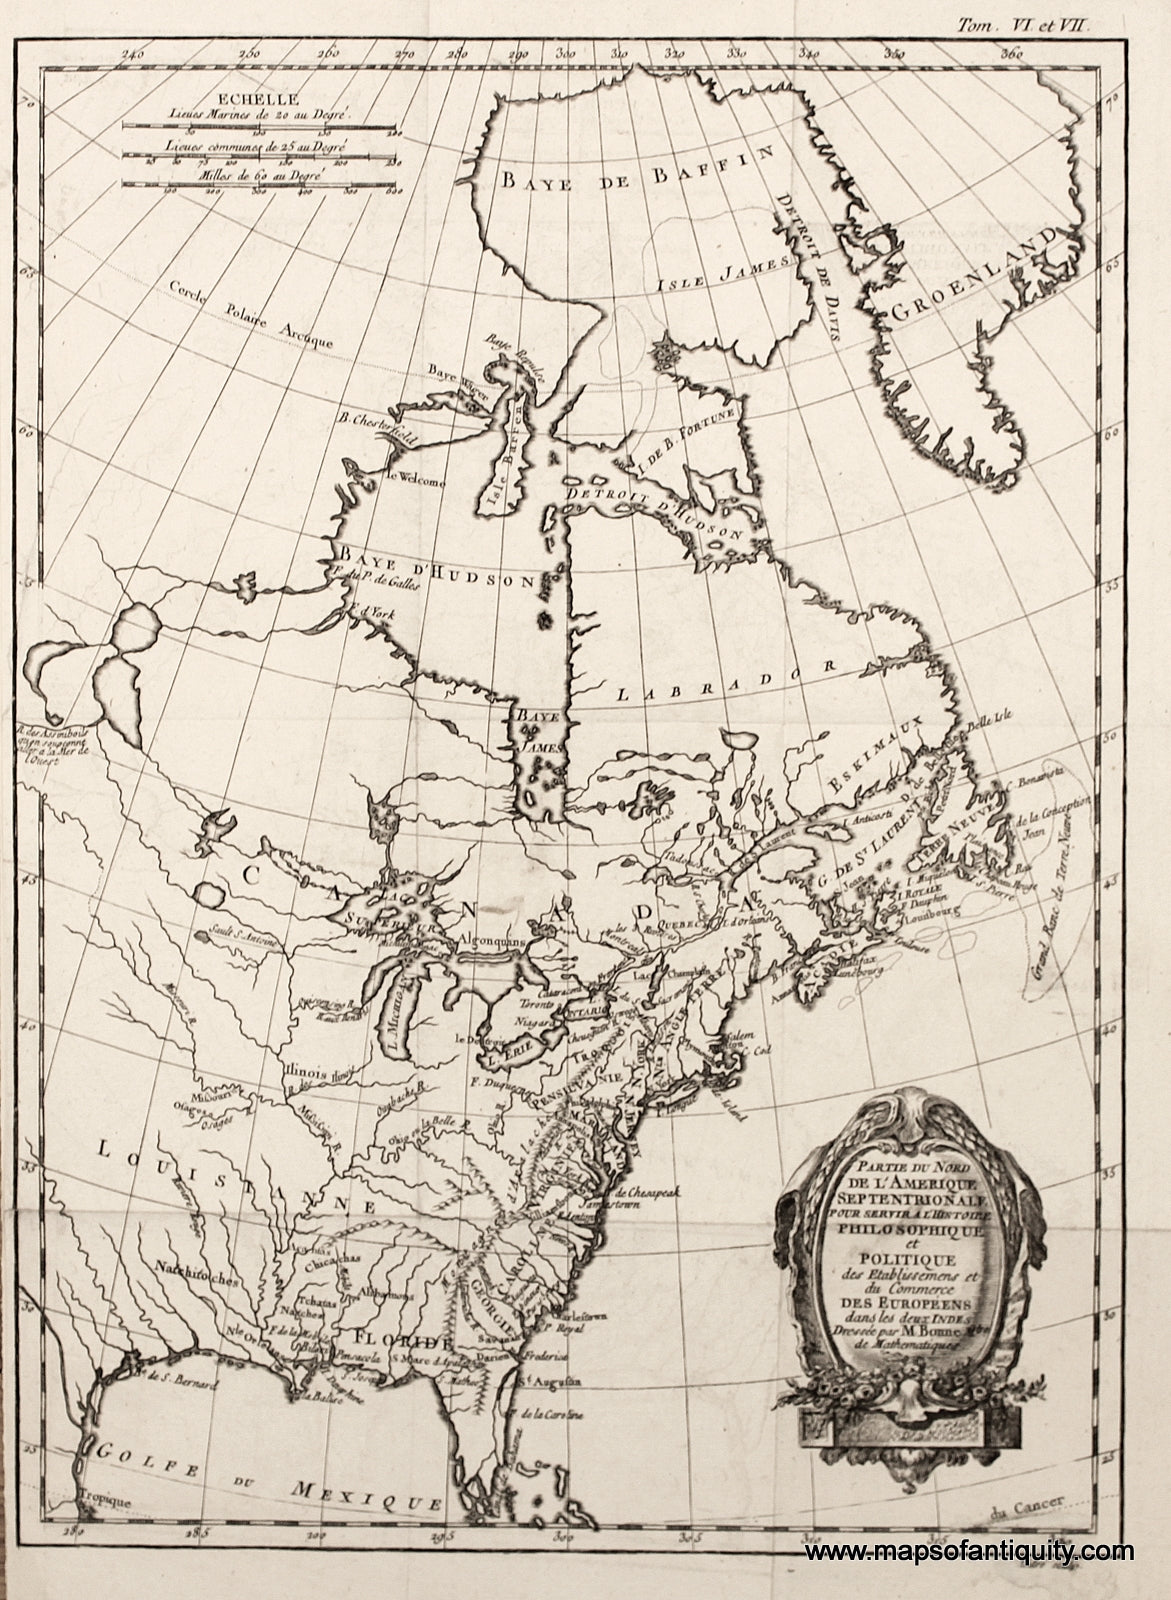 Black-and-White-Antique-Map-Partie-du-Nord-de-L'Amerique-Septentrionale-pour-servie-a-L'Histoire-Philosophique-et-Politique-des-Etablissemens-et-du-Commerce-des-Europeens-dans-les-deux-Indes.**********-North-America-North-America-General-1774-Bonne-Maps-Of-Antiquity